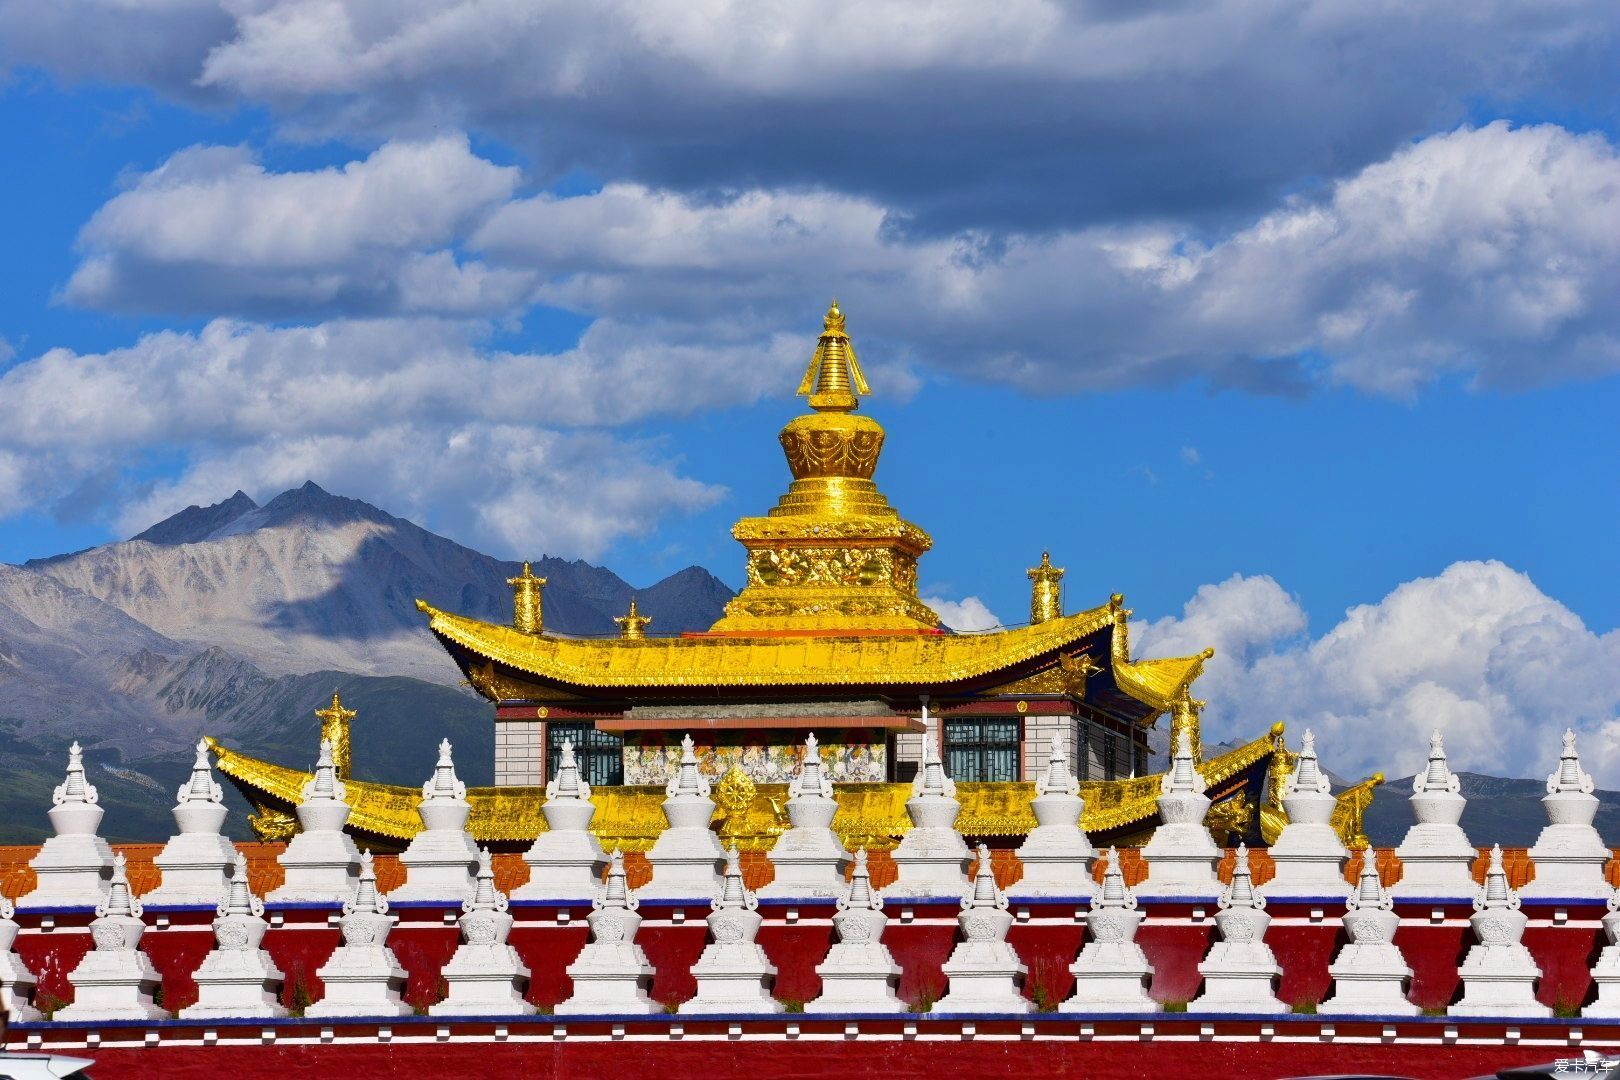 木雅金塔是由宁玛派红教六大佛寺之一的竹庆寺活佛多吉扎西活佛捐资于